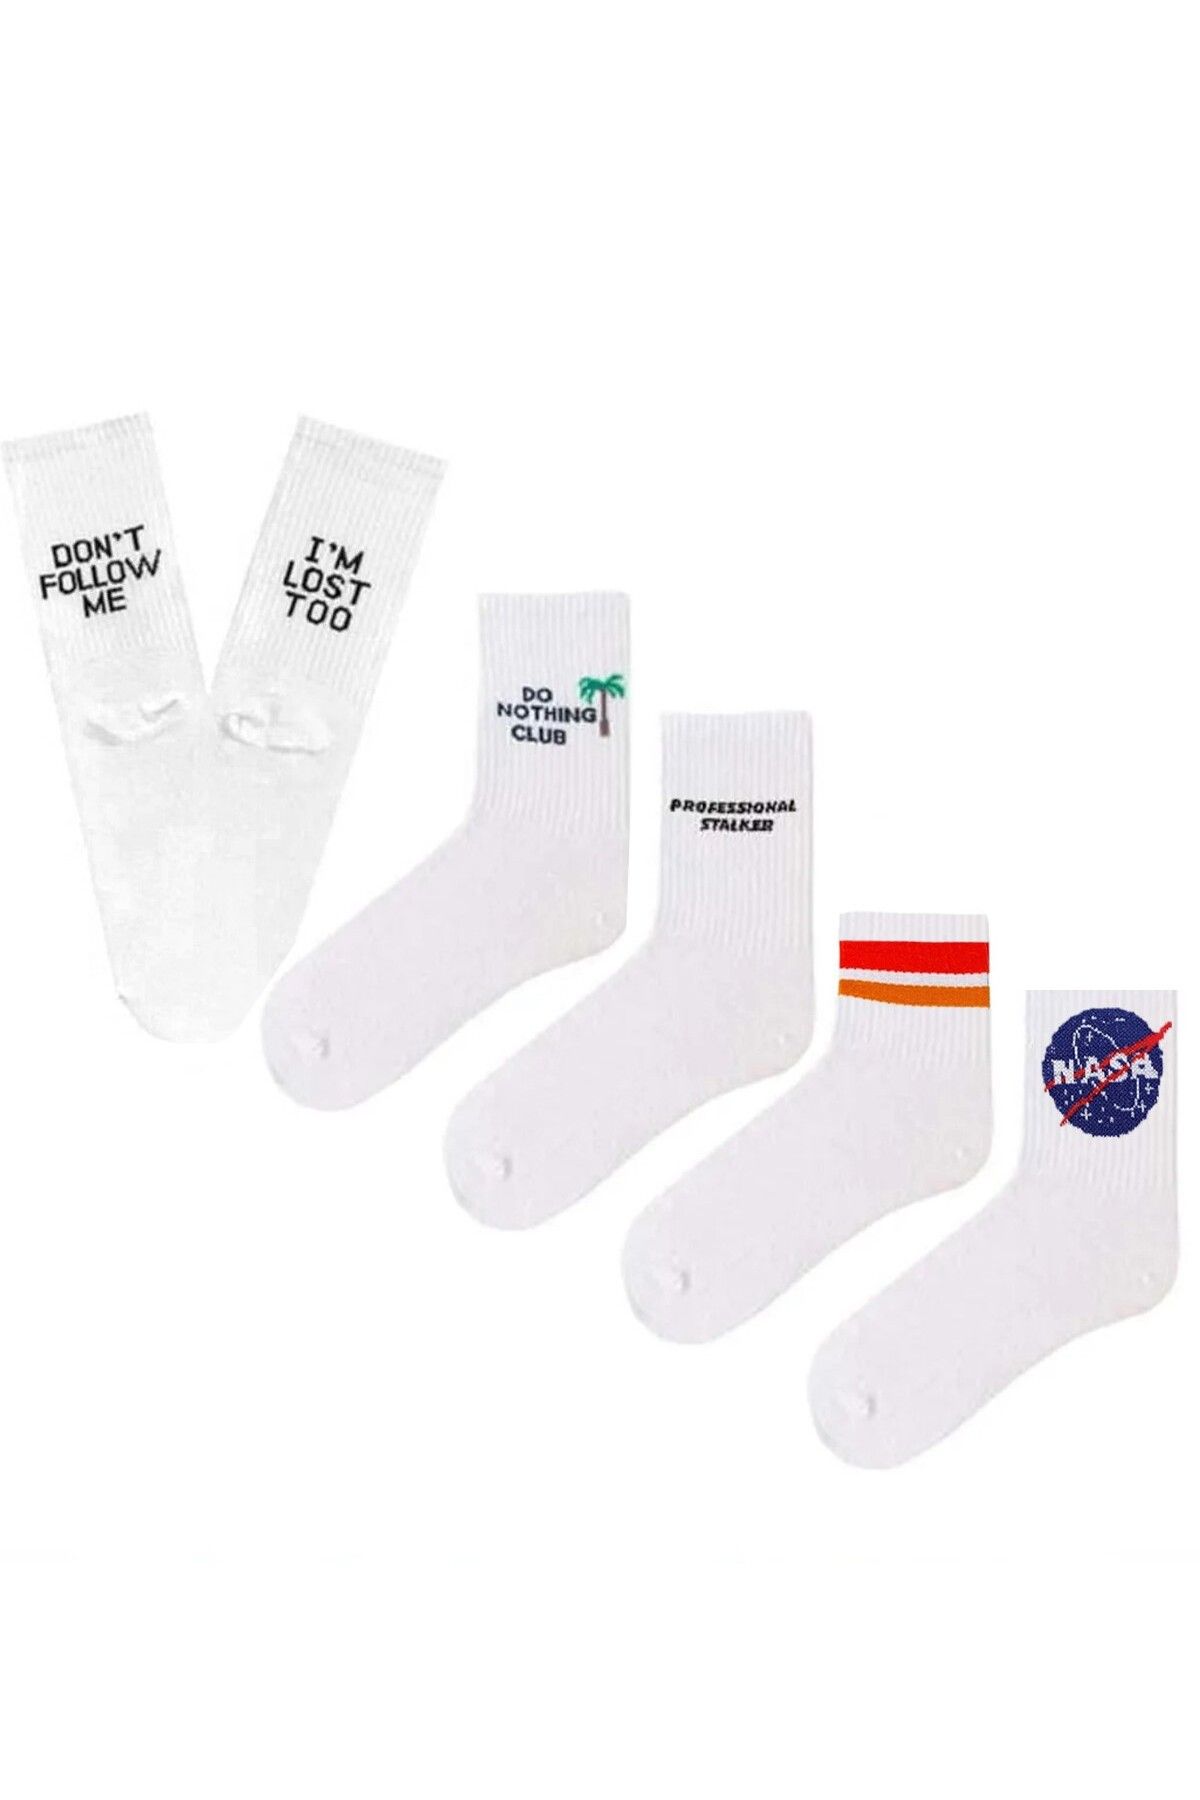 Socks Stations Yazılı Desenli Çizgili Spor Çorap Seti 5'li - Kadın&erkek Çorap Beyaz Çorap